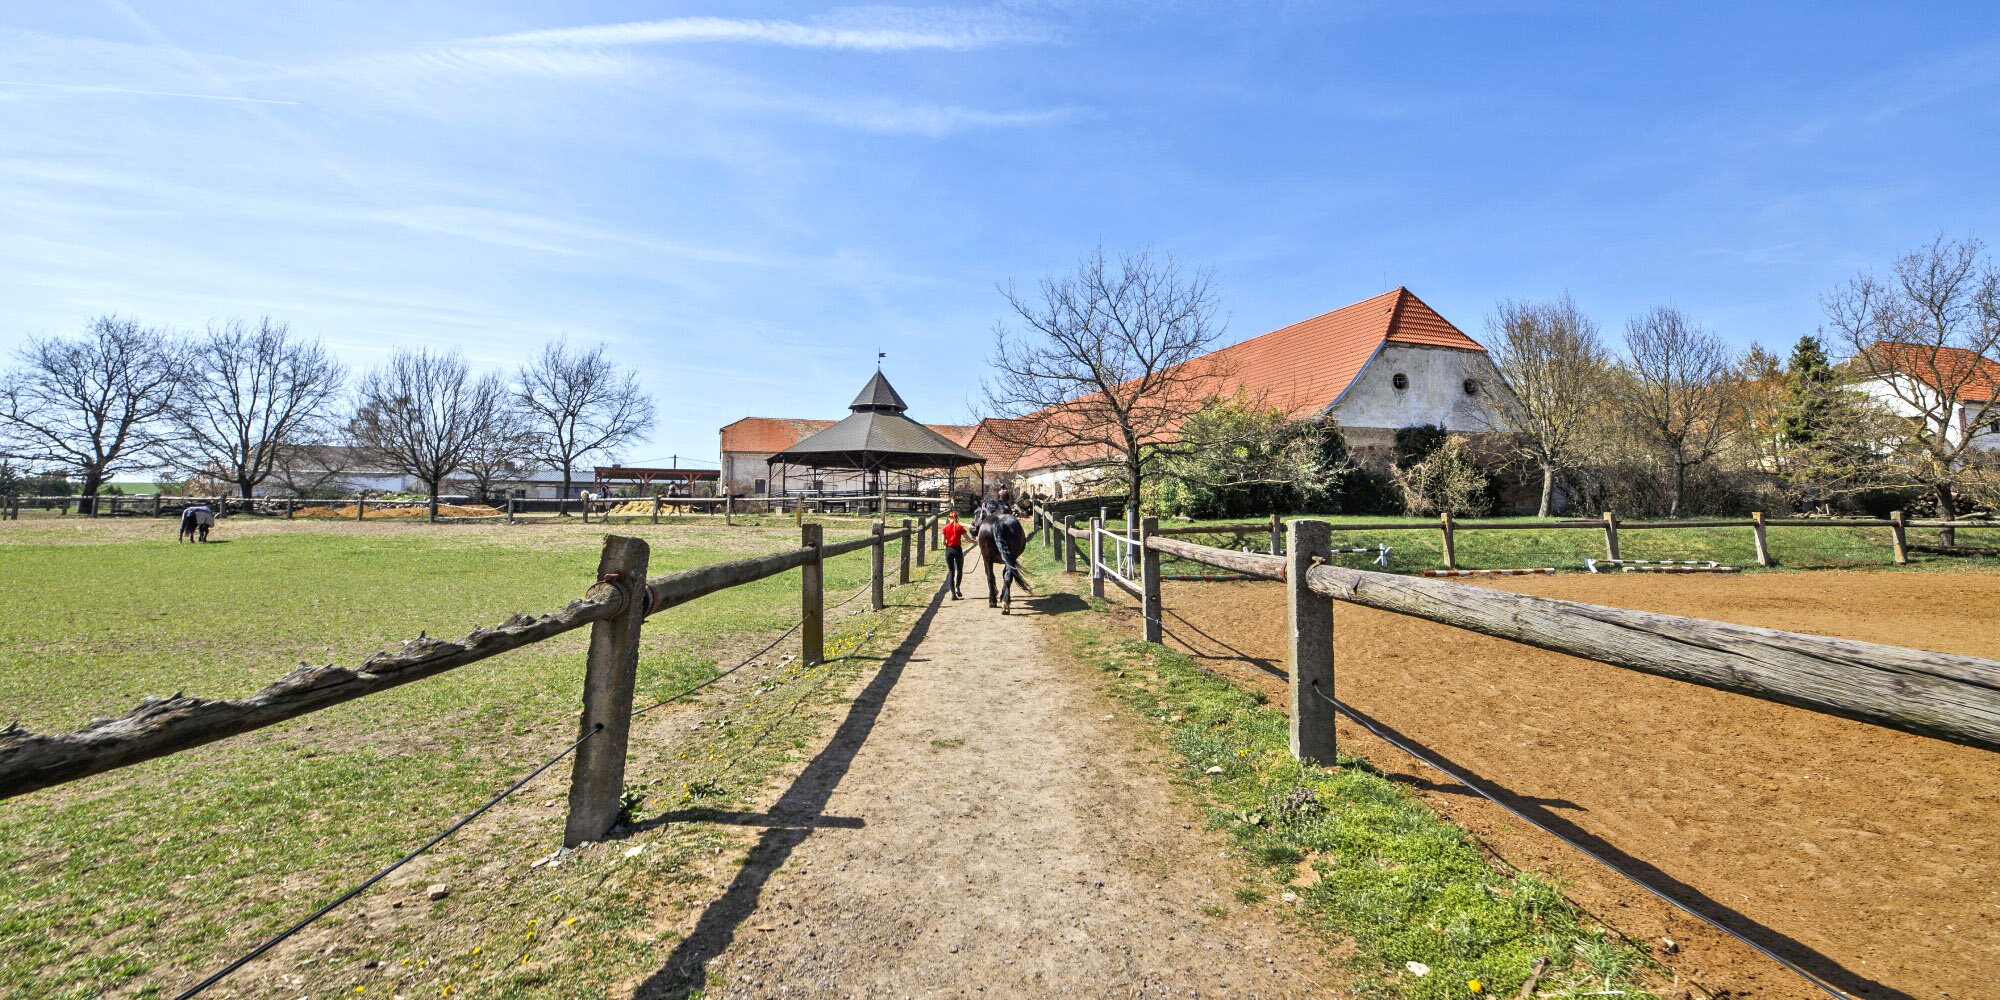 Farma u Znojma: pobyt se stravou i projížďka na koni